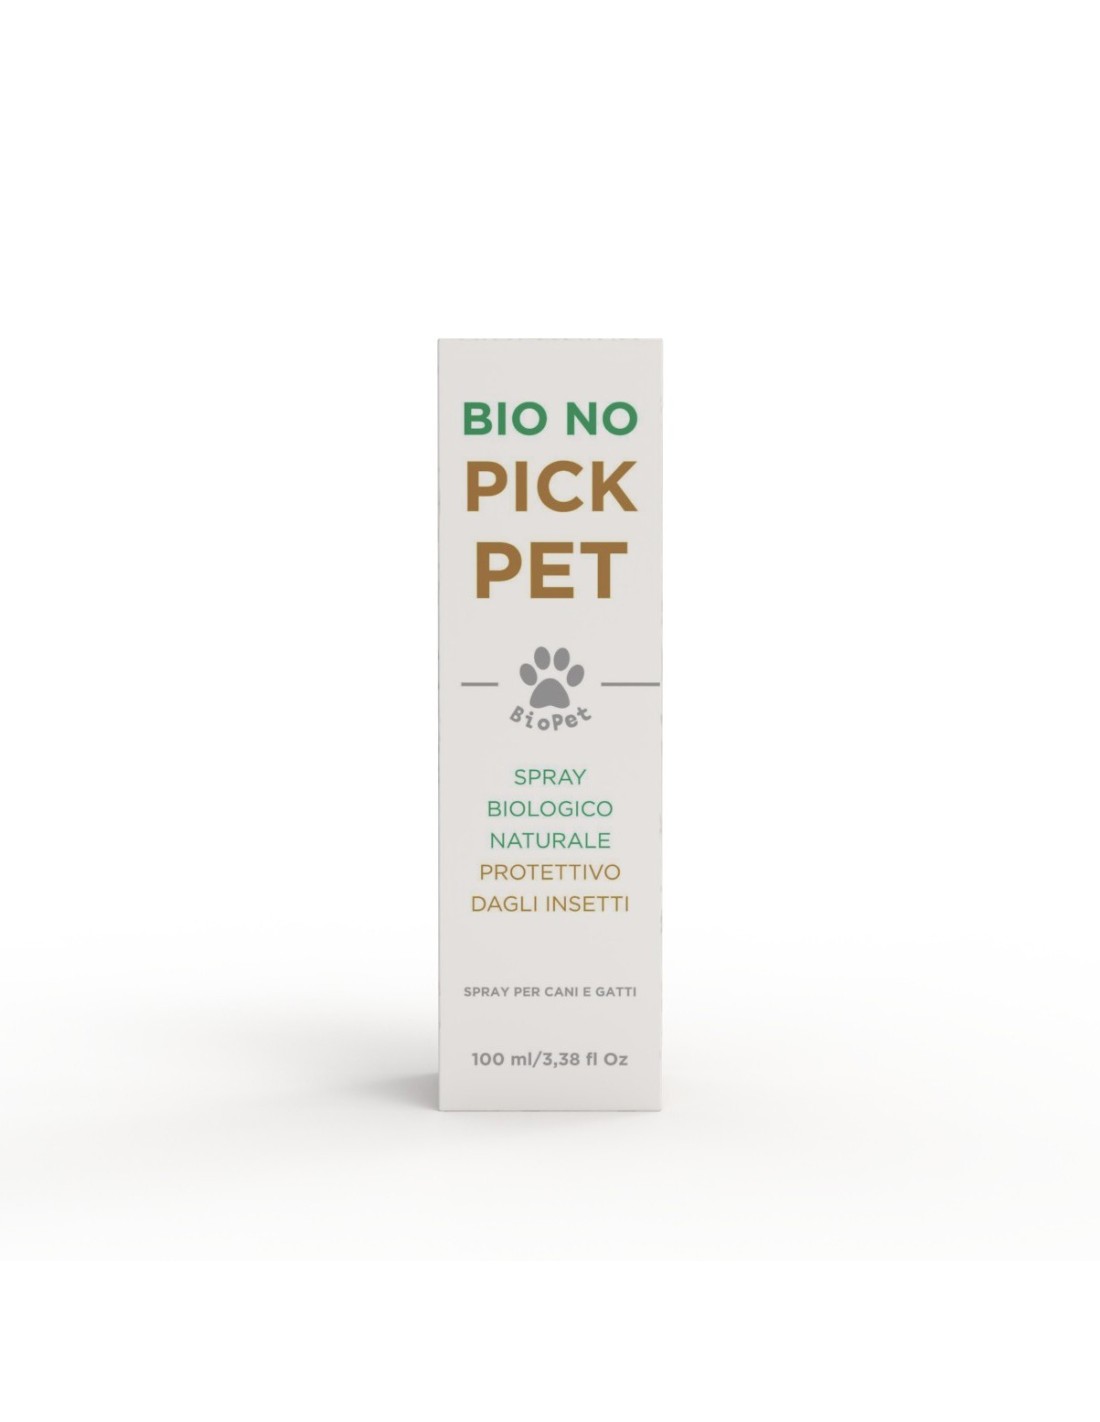 Antiparassitario Repellente per Cani e Gatti Naturale Bio No PickPet Spray  100ml